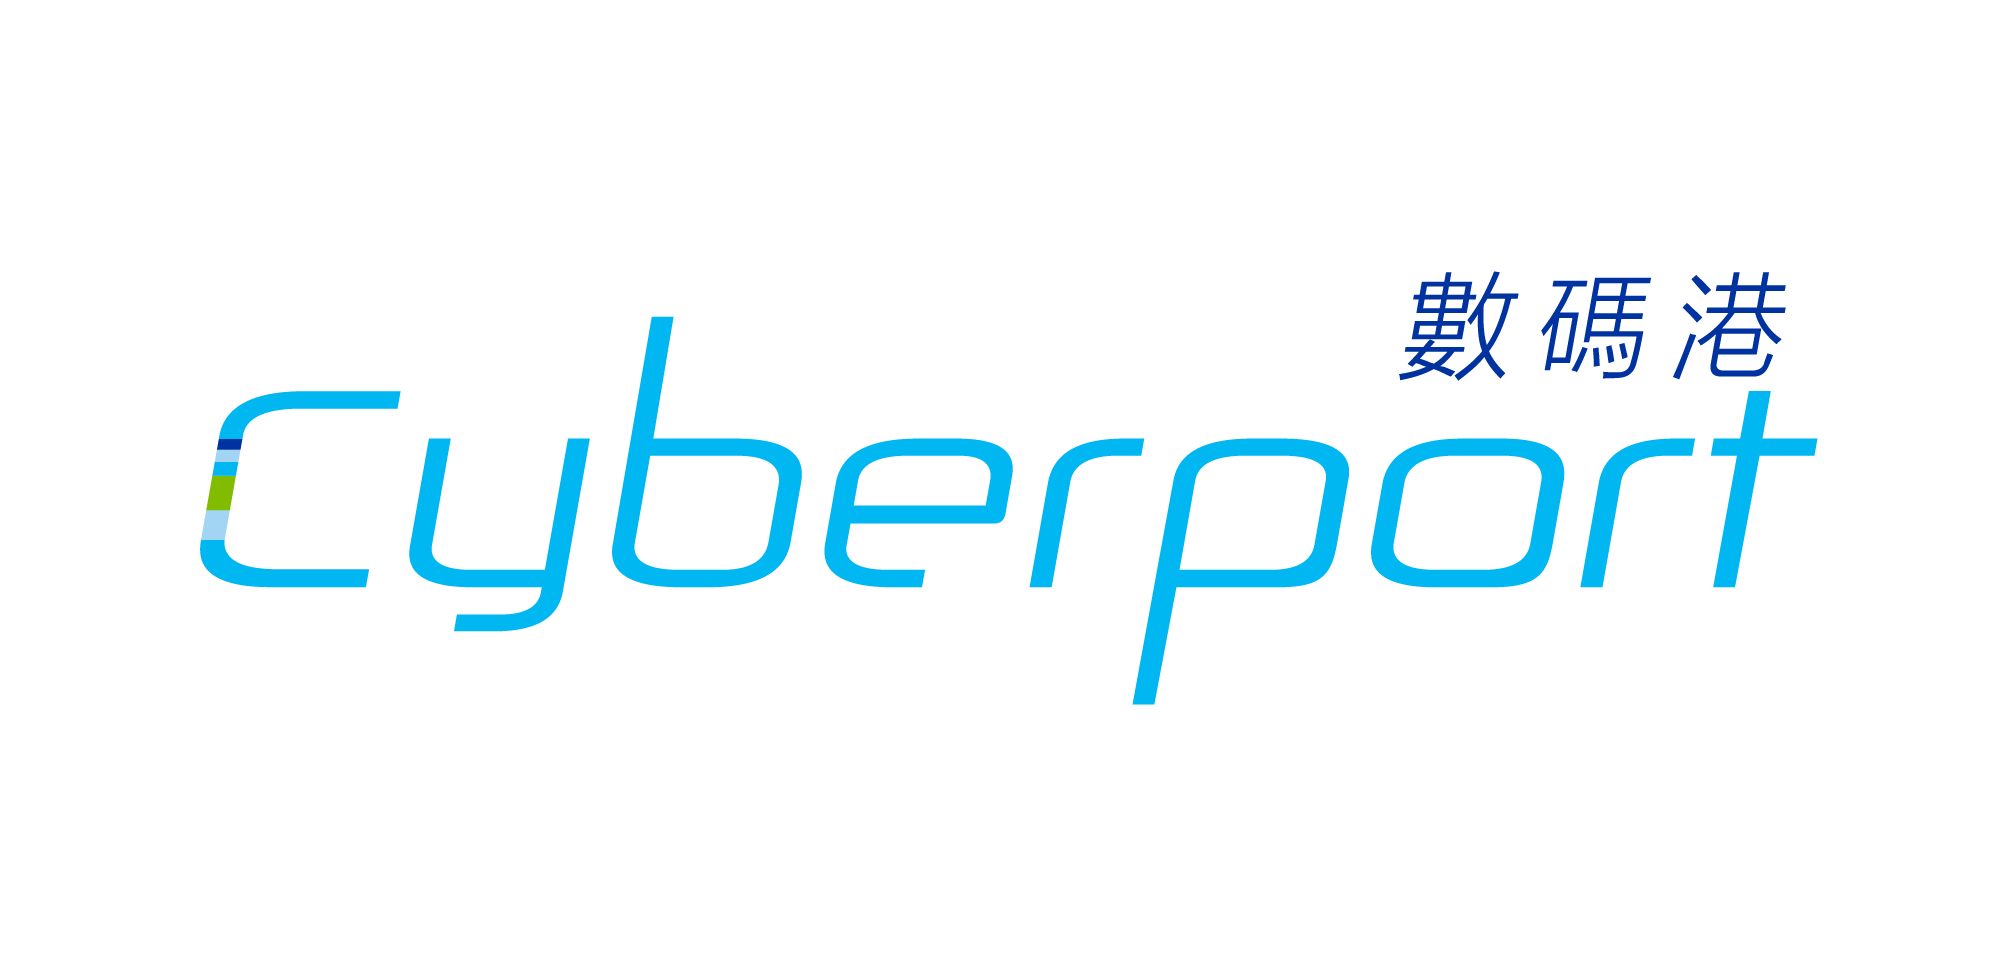 Cyberport 1